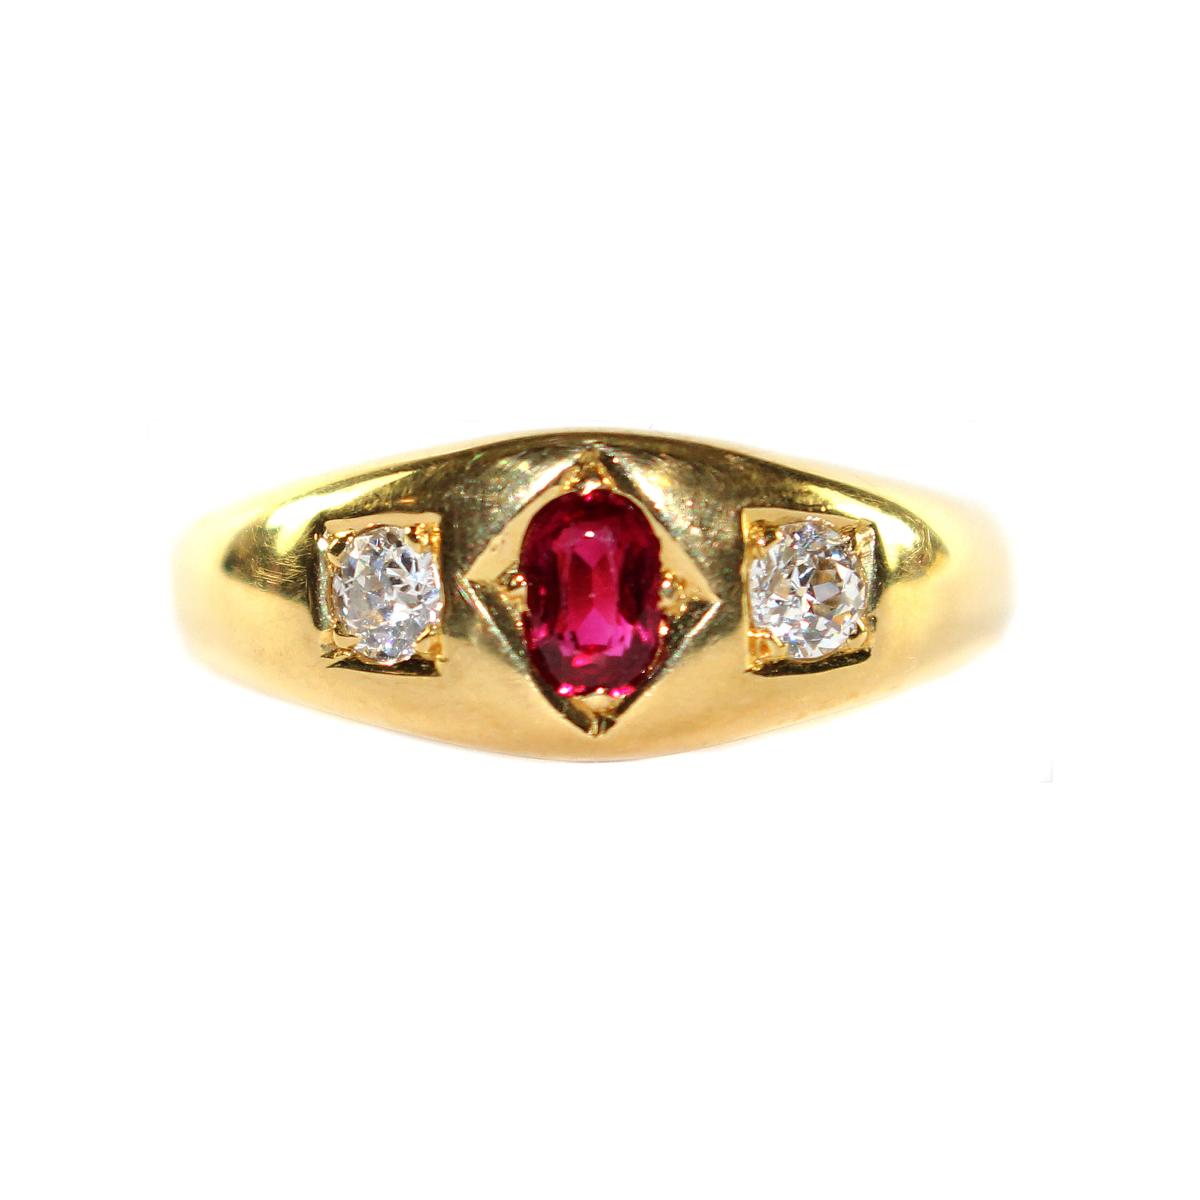 Edwardian Ruby and Diamond Gypsy Ring circa 1910